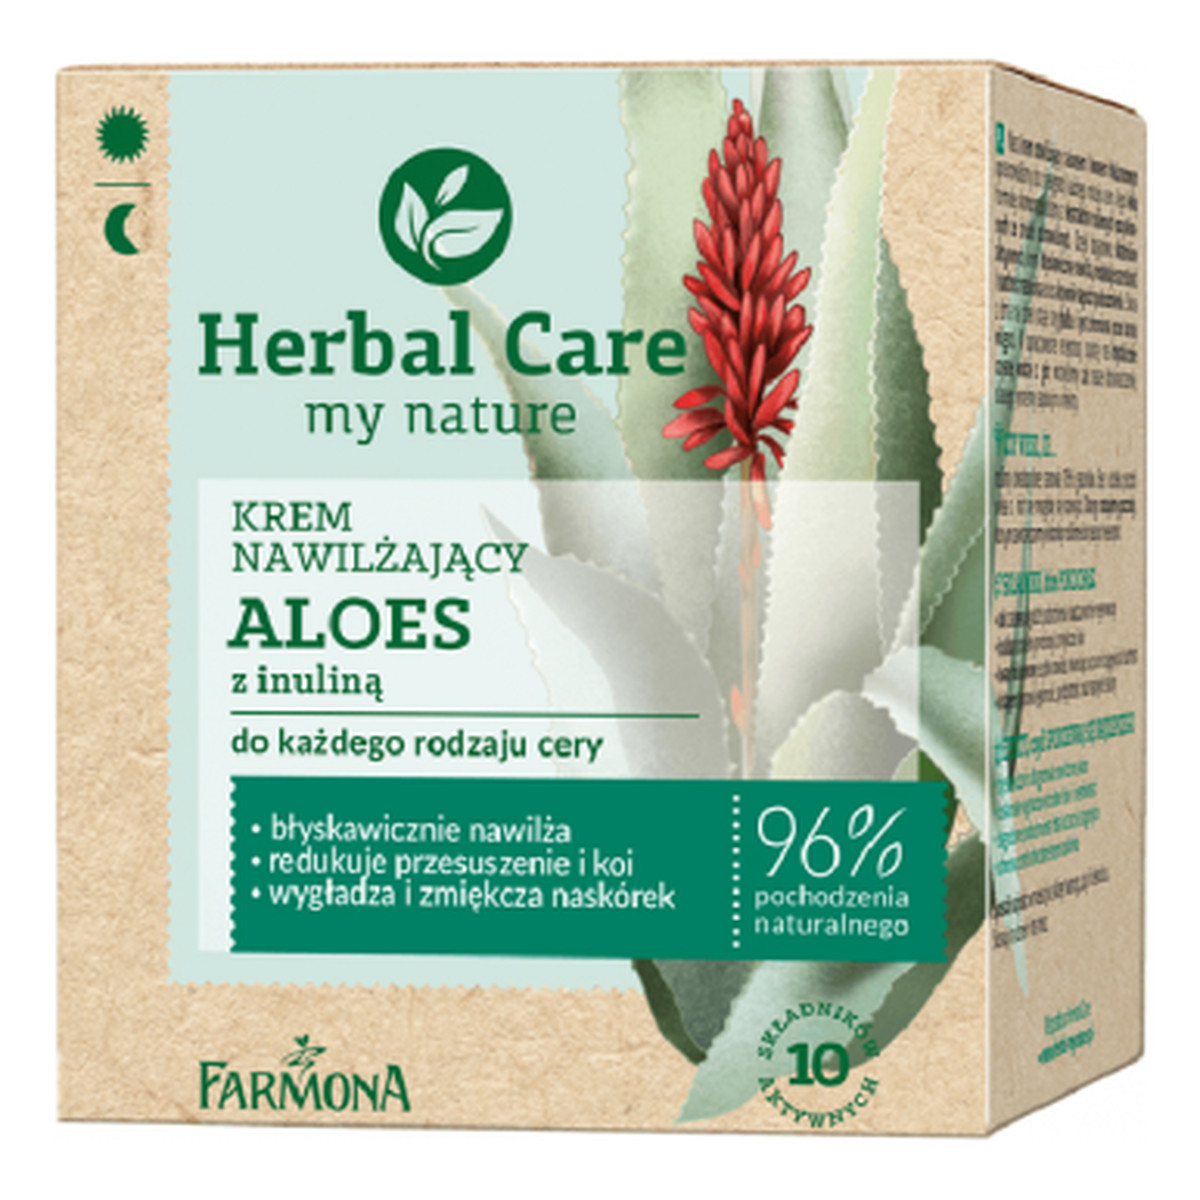 Farmona Herbal Care my nature Krem Nawilżający Aloes 50ml